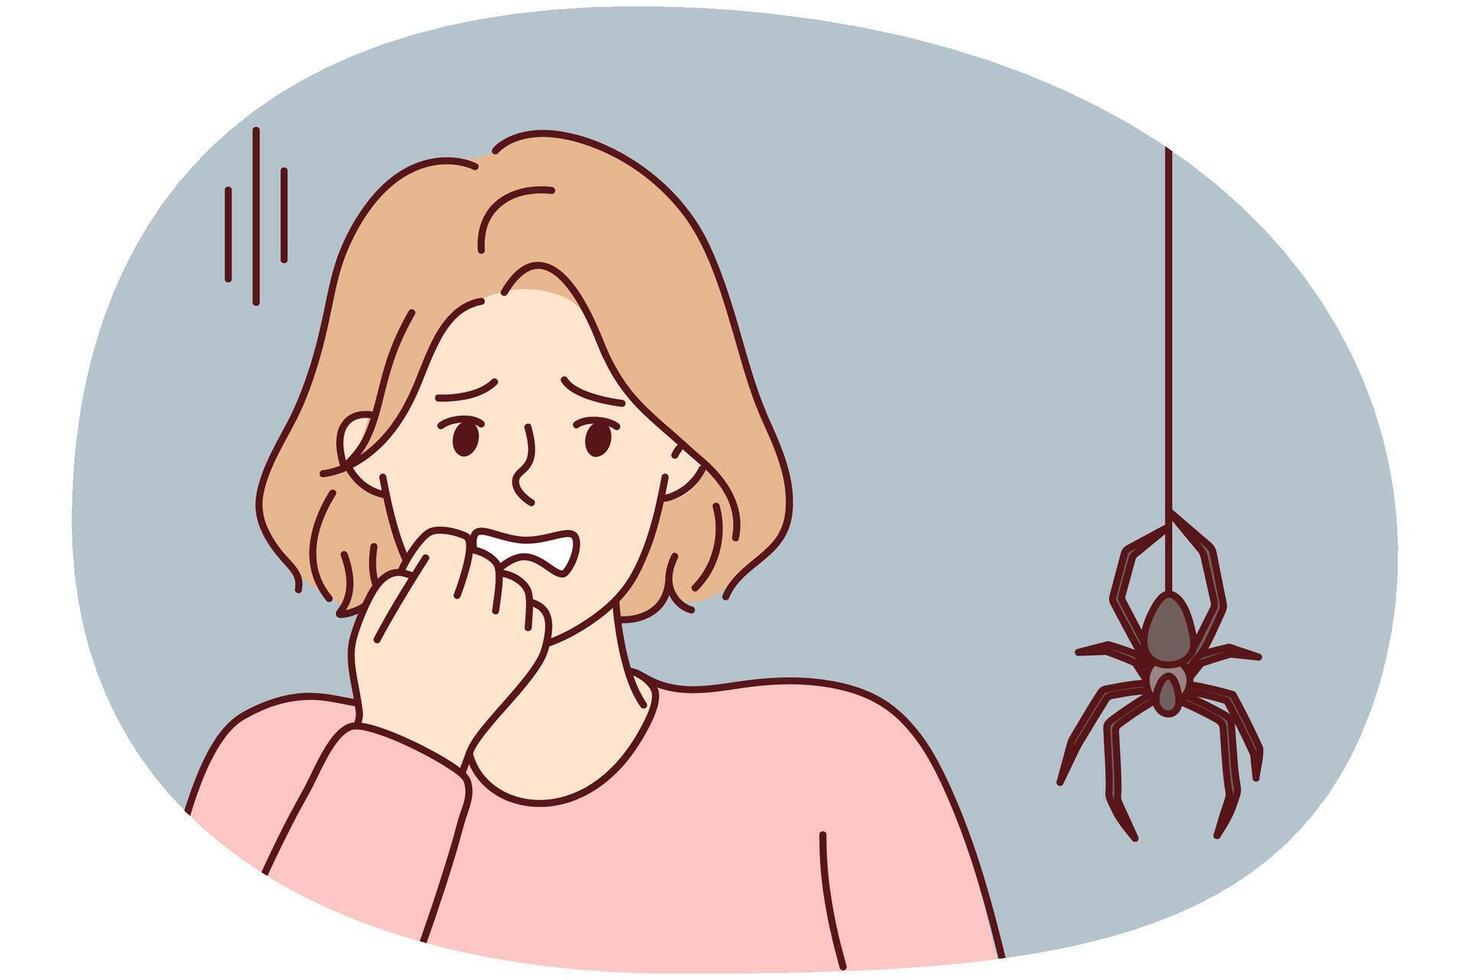 asustado mujer pone mano a cara ve grande araña descendente desde techo a lo largo web. vector imagen